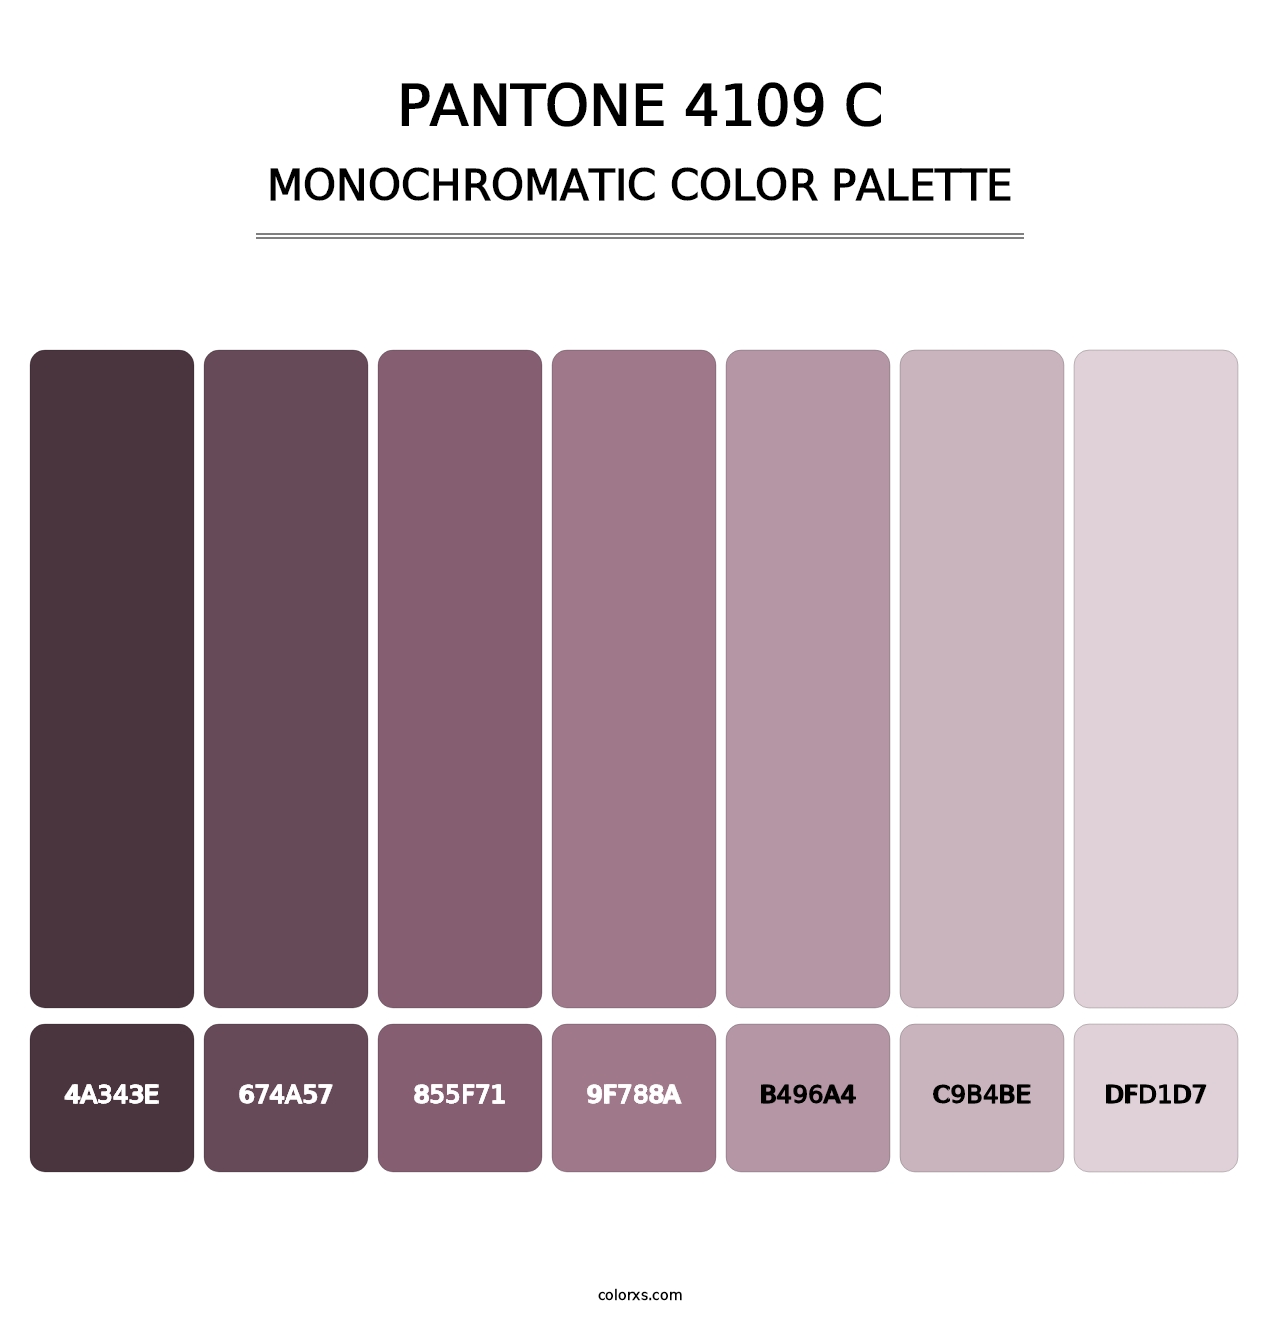 PANTONE 4109 C - Monochromatic Color Palette